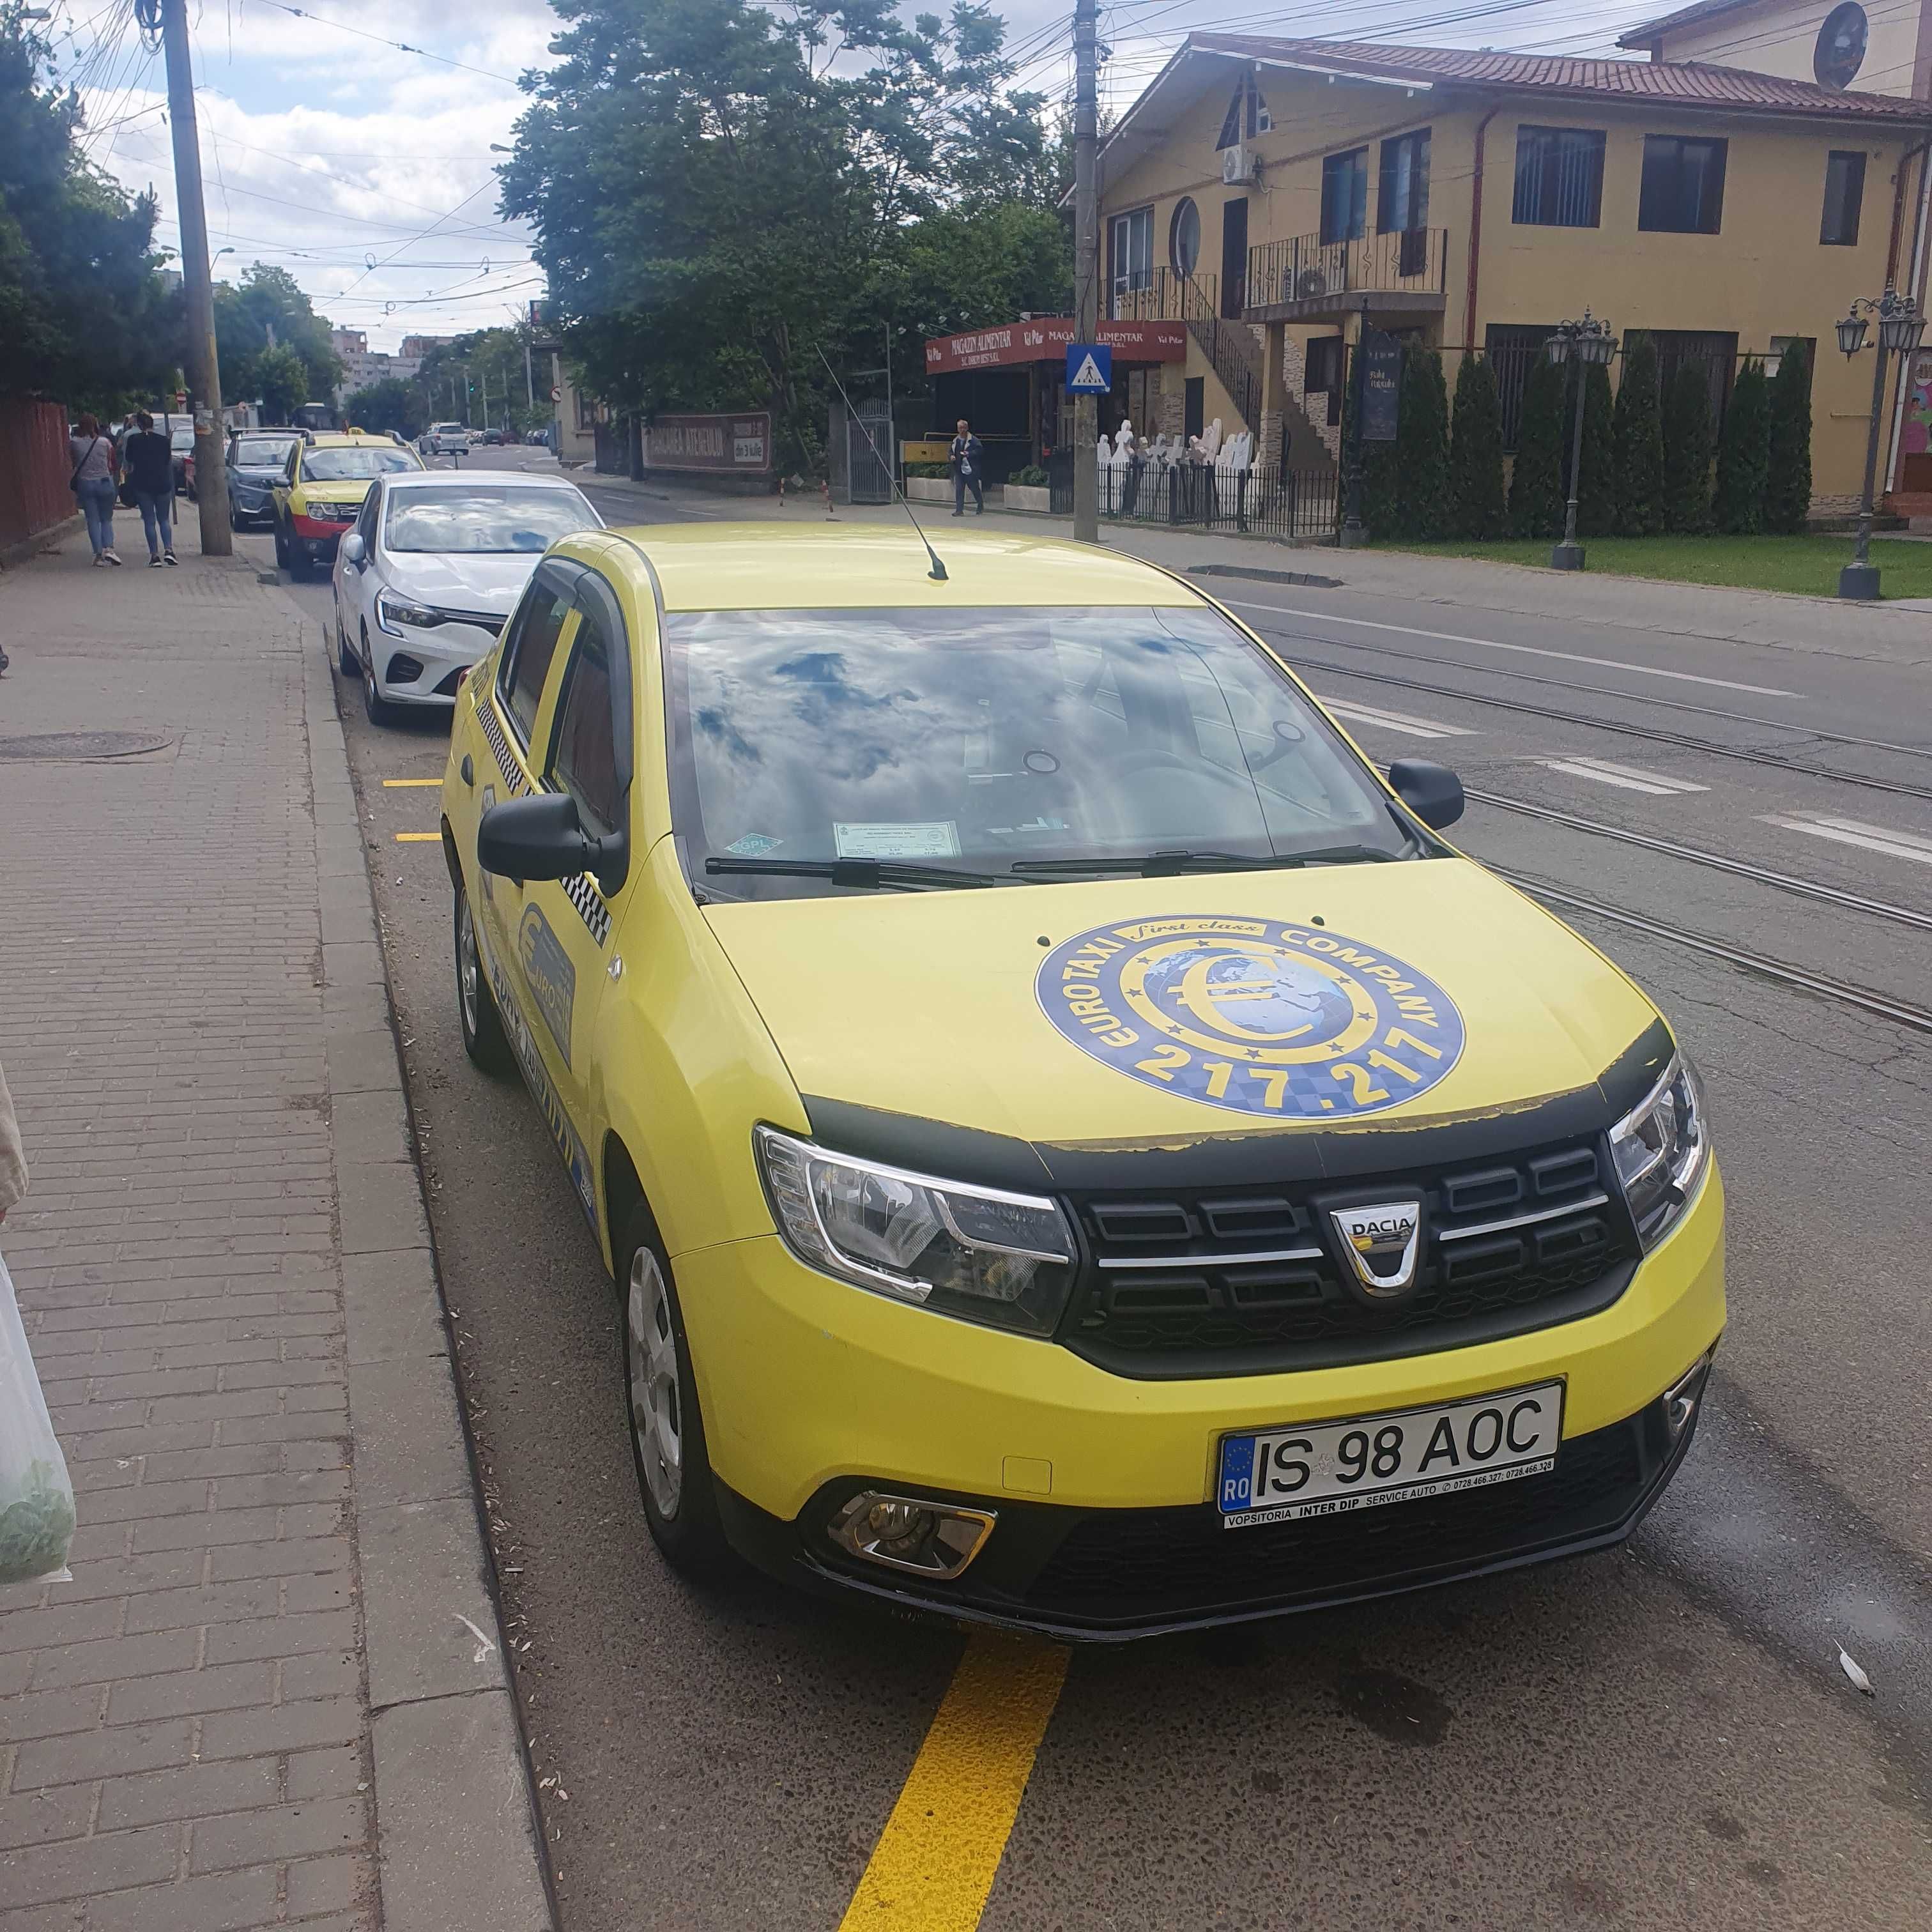 De vanzare Dacia Logan si autorizatie taxi